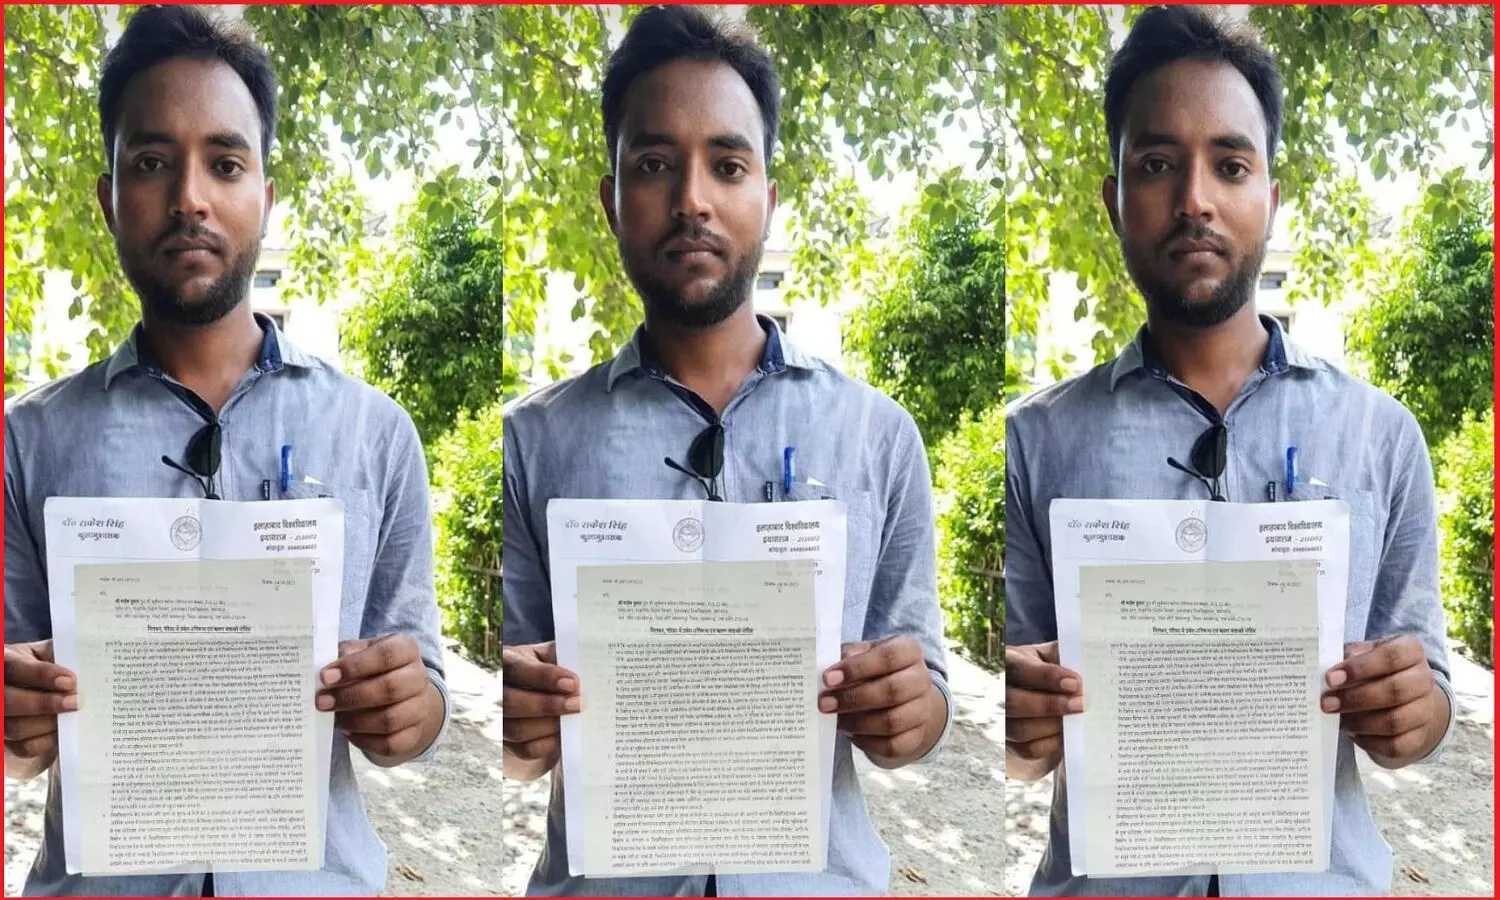 इलाहाबाद विश्वविद्यालय मैनेजमेंट ने फीस वृद्धि के खिलाफ आंदोलनरत शोध छात्र मनीष कुमार को तीसरी बार किया सस्पेंड, फेसबुक पोस्ट लिखने पर की गयी कार्रवाई